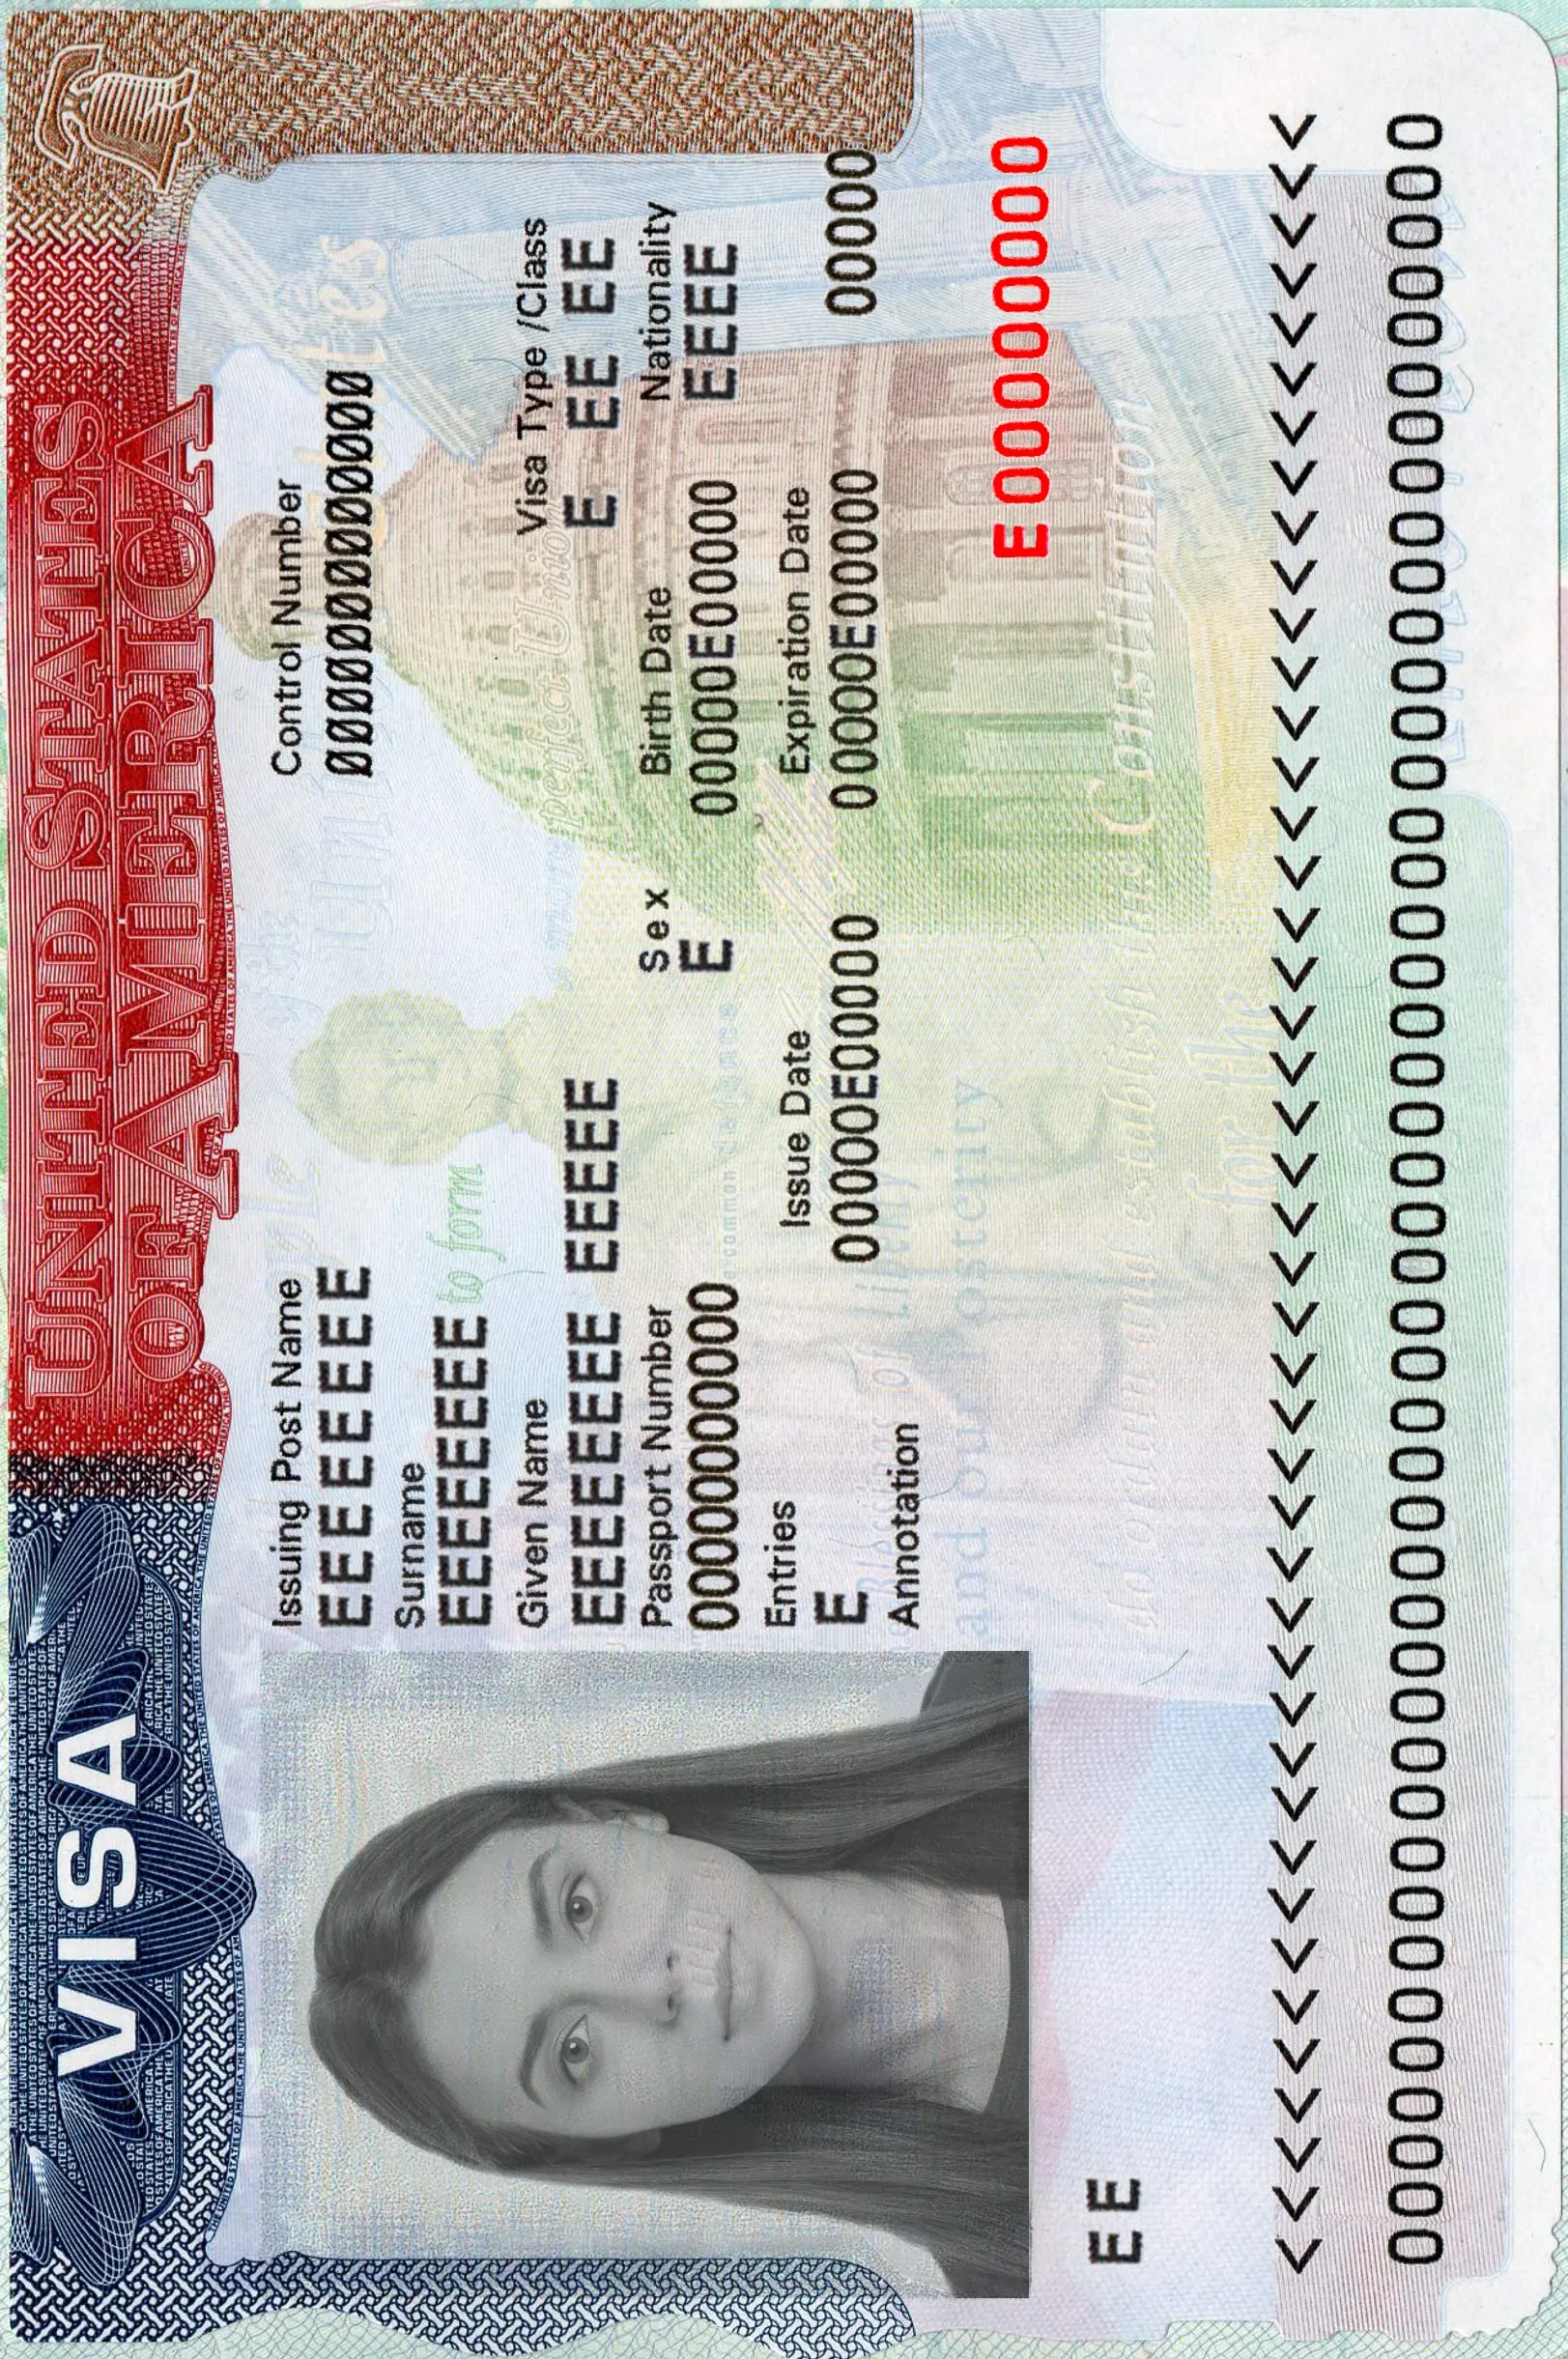 Slika za američku vizu